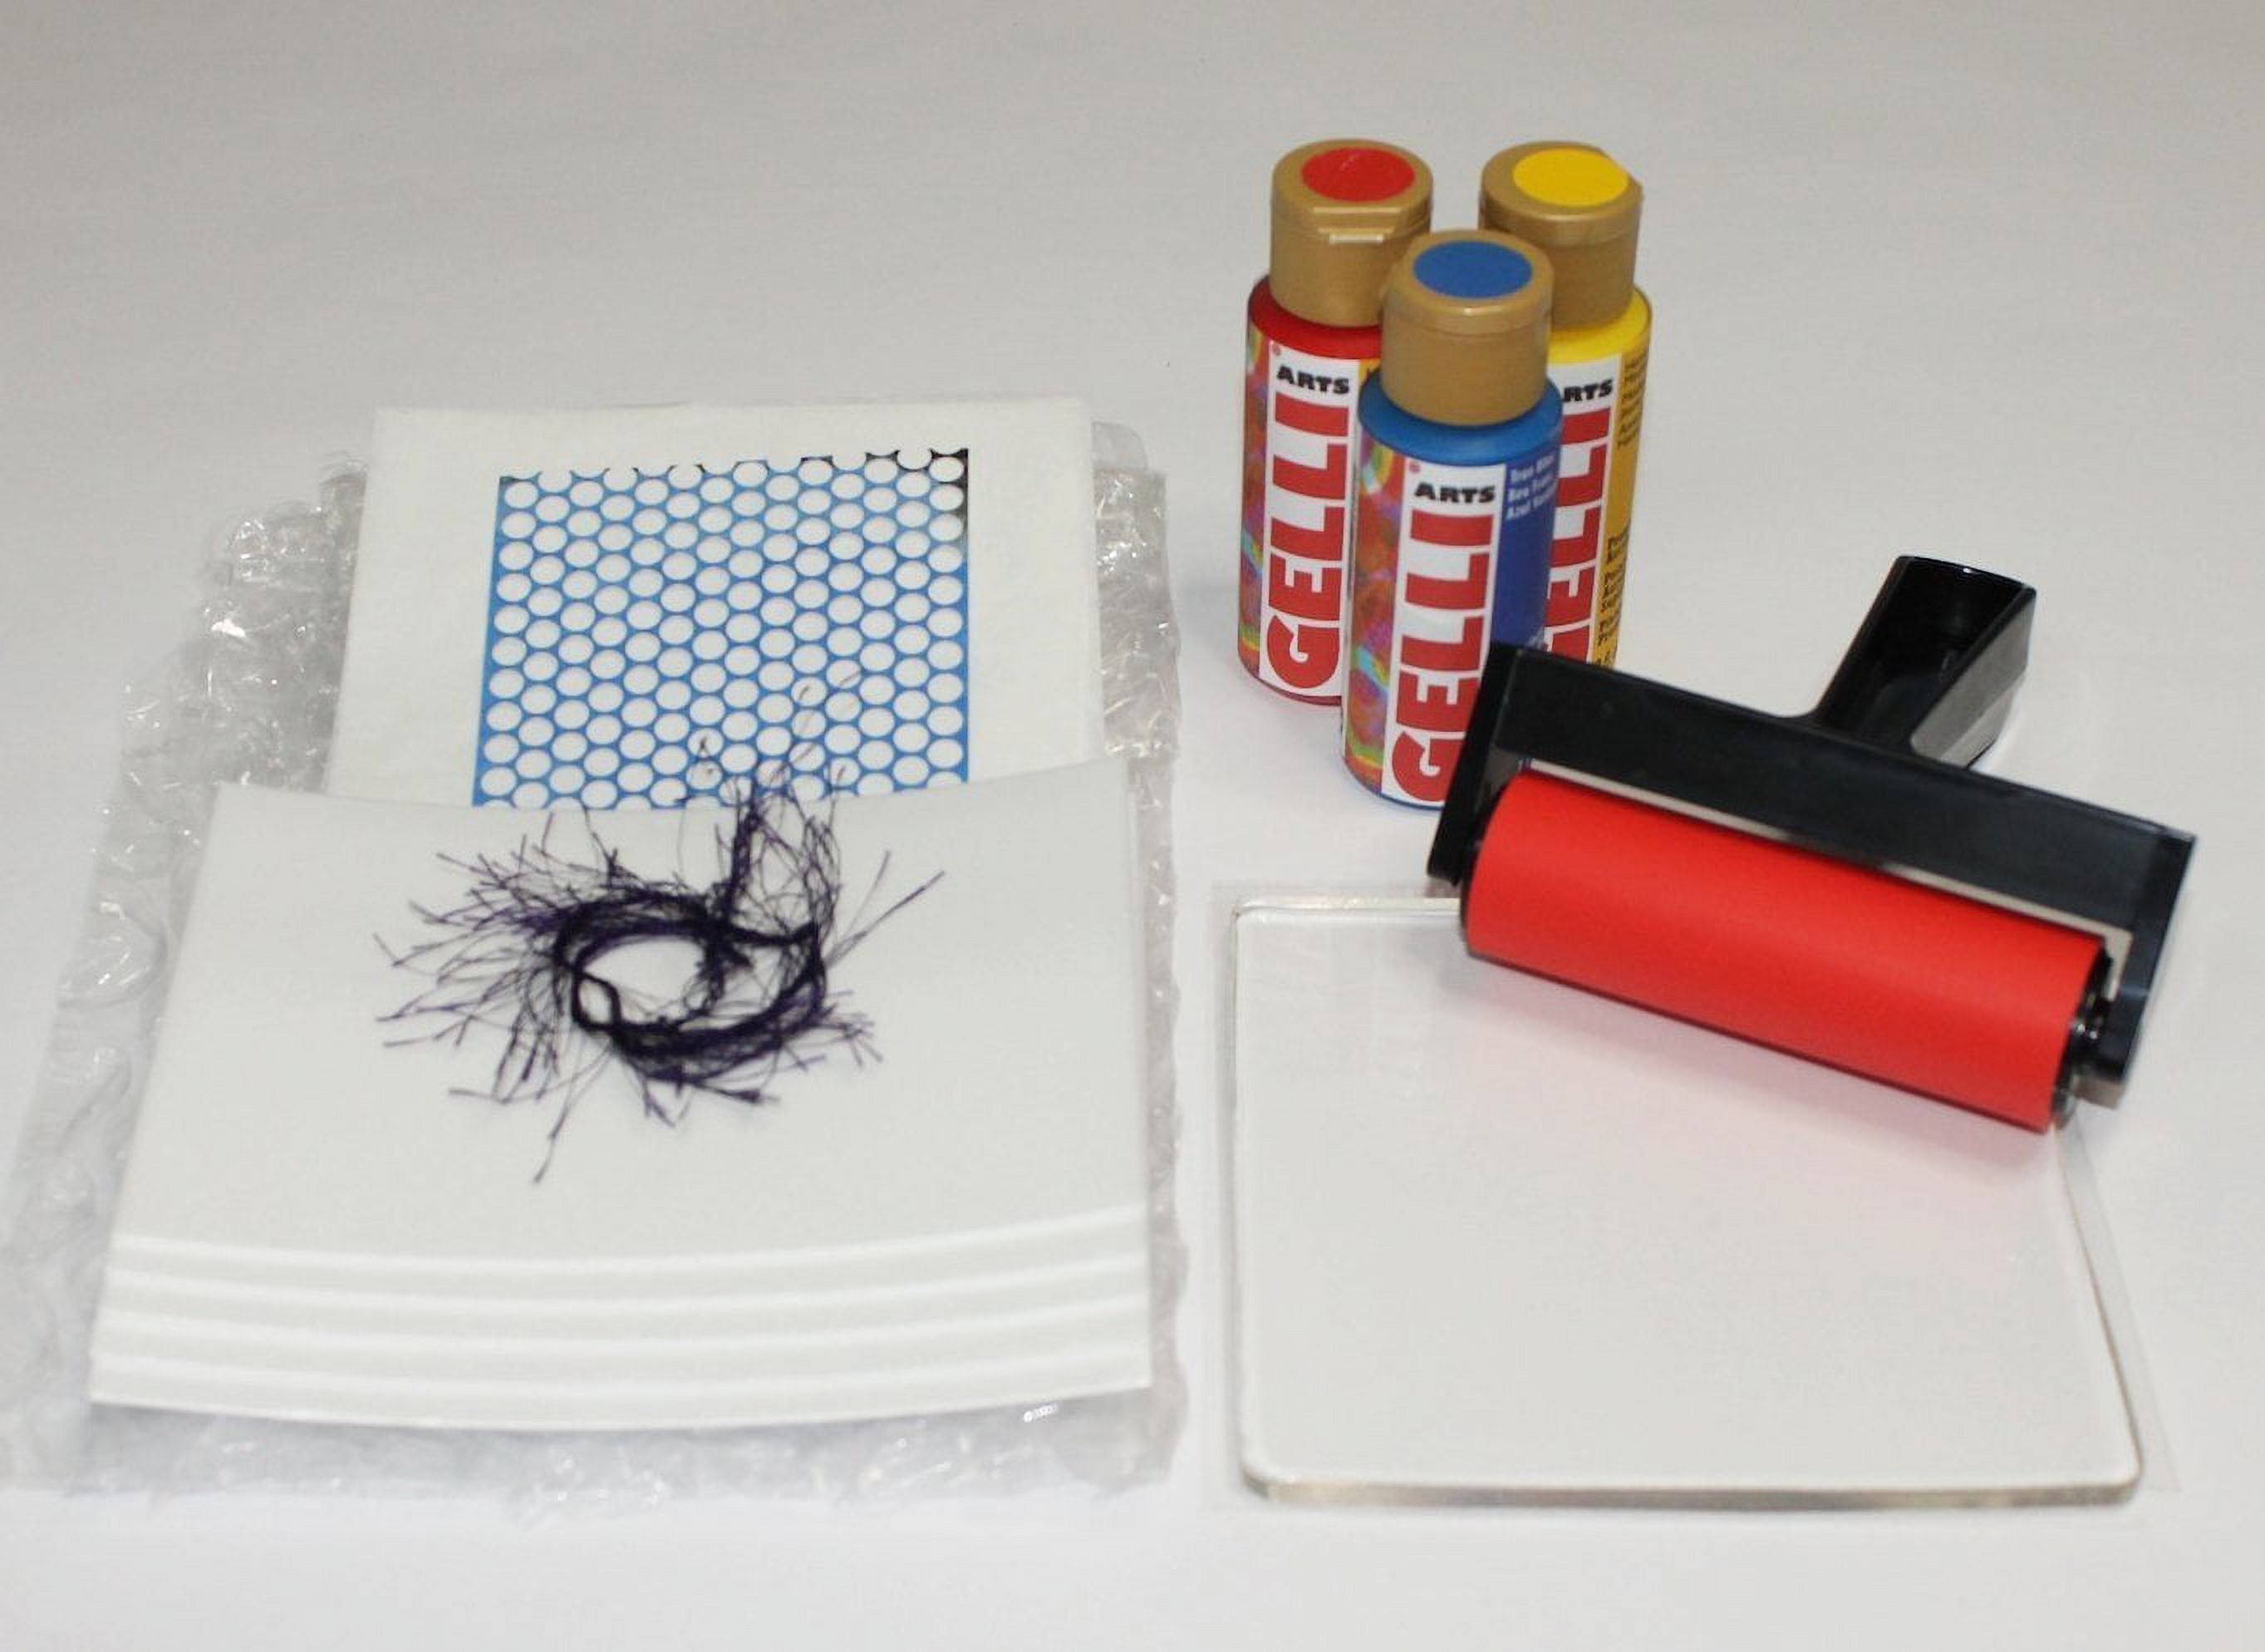 Gelli Arts Stamp Kit with Gel Plate Kit Stamping and Printing Kit, DIY  Stamp Kit, Stamp Making Kit with 5 X 5 Gel Printing Plate and Printmaking  Supplies, Make Your Own, gel